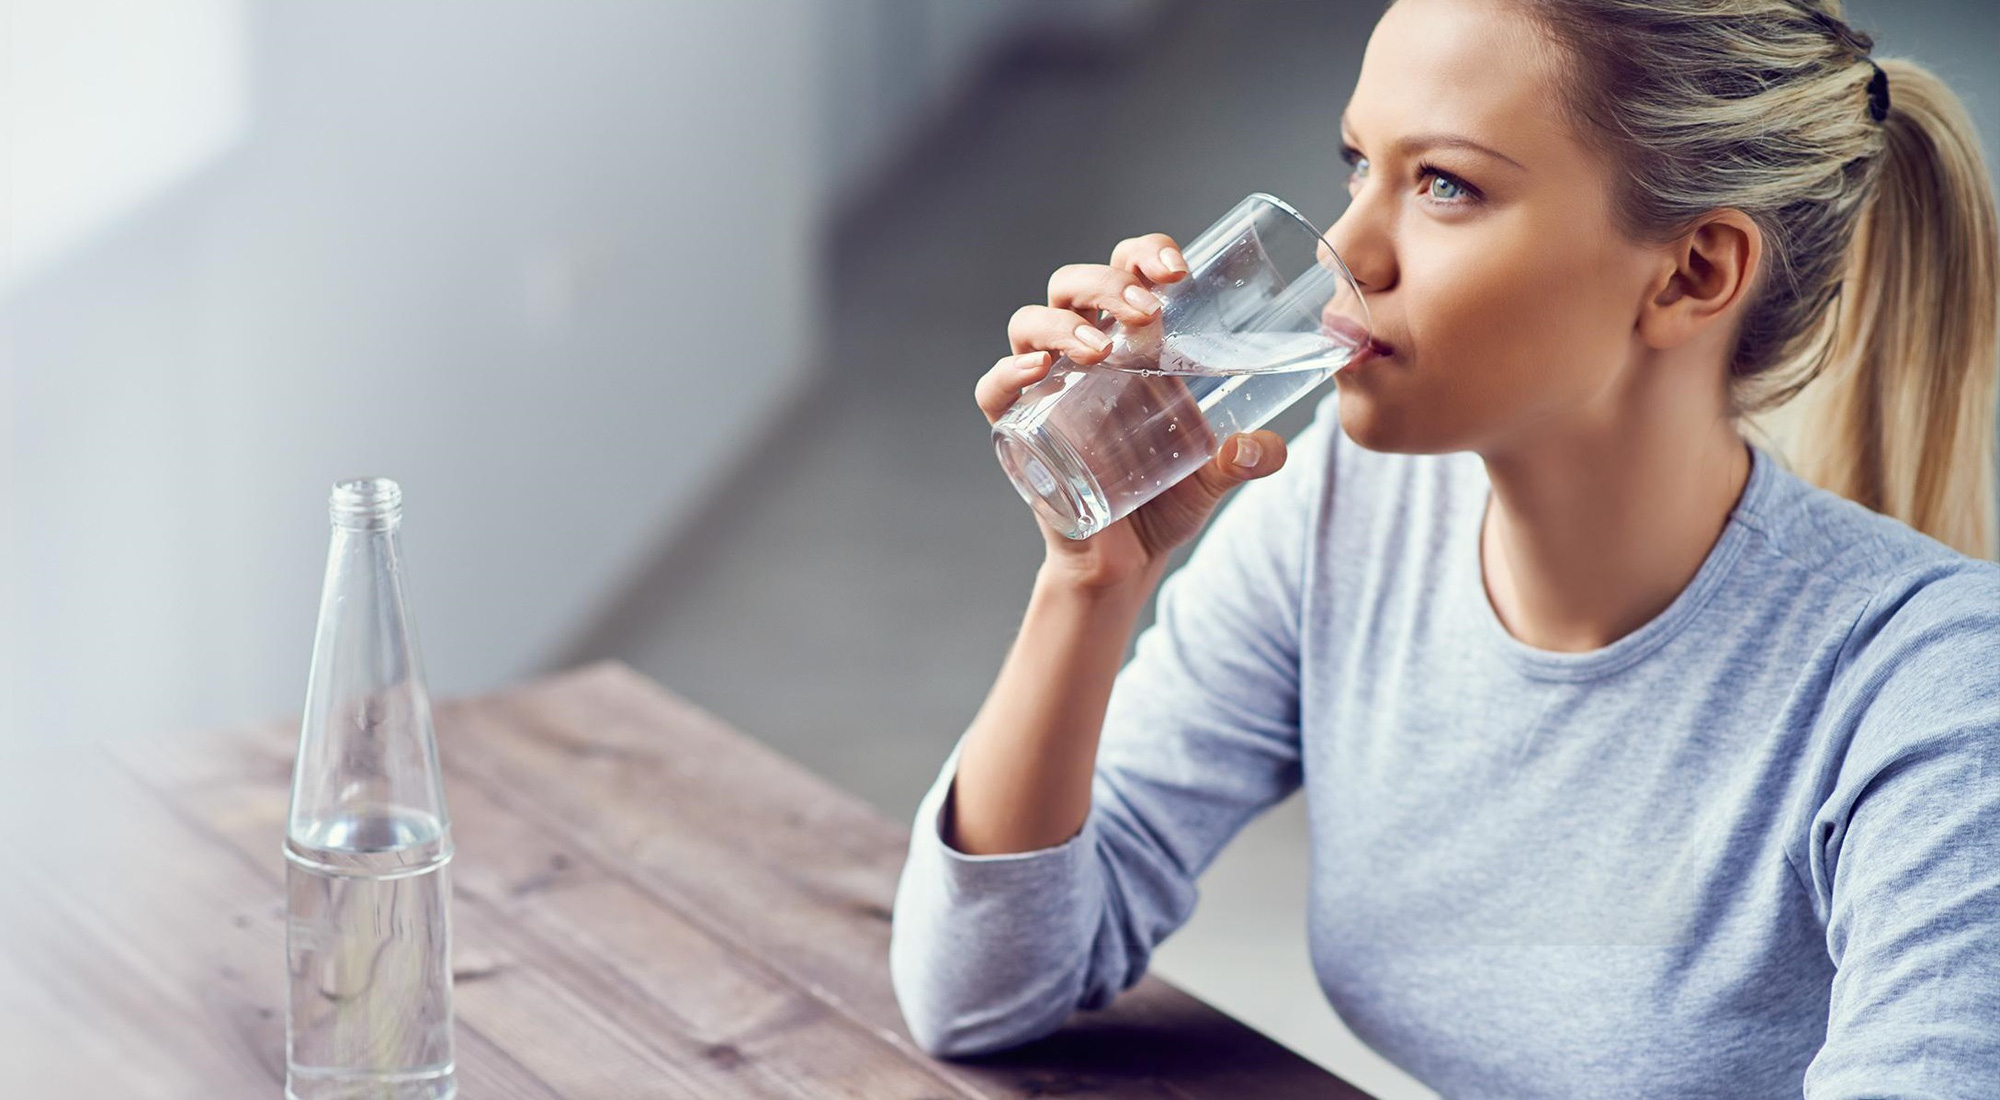 Khi thấy cơ thể xuất hiện 1 trong những dấu hiệu tăng huyết áp thì chúng ta nên uống nước